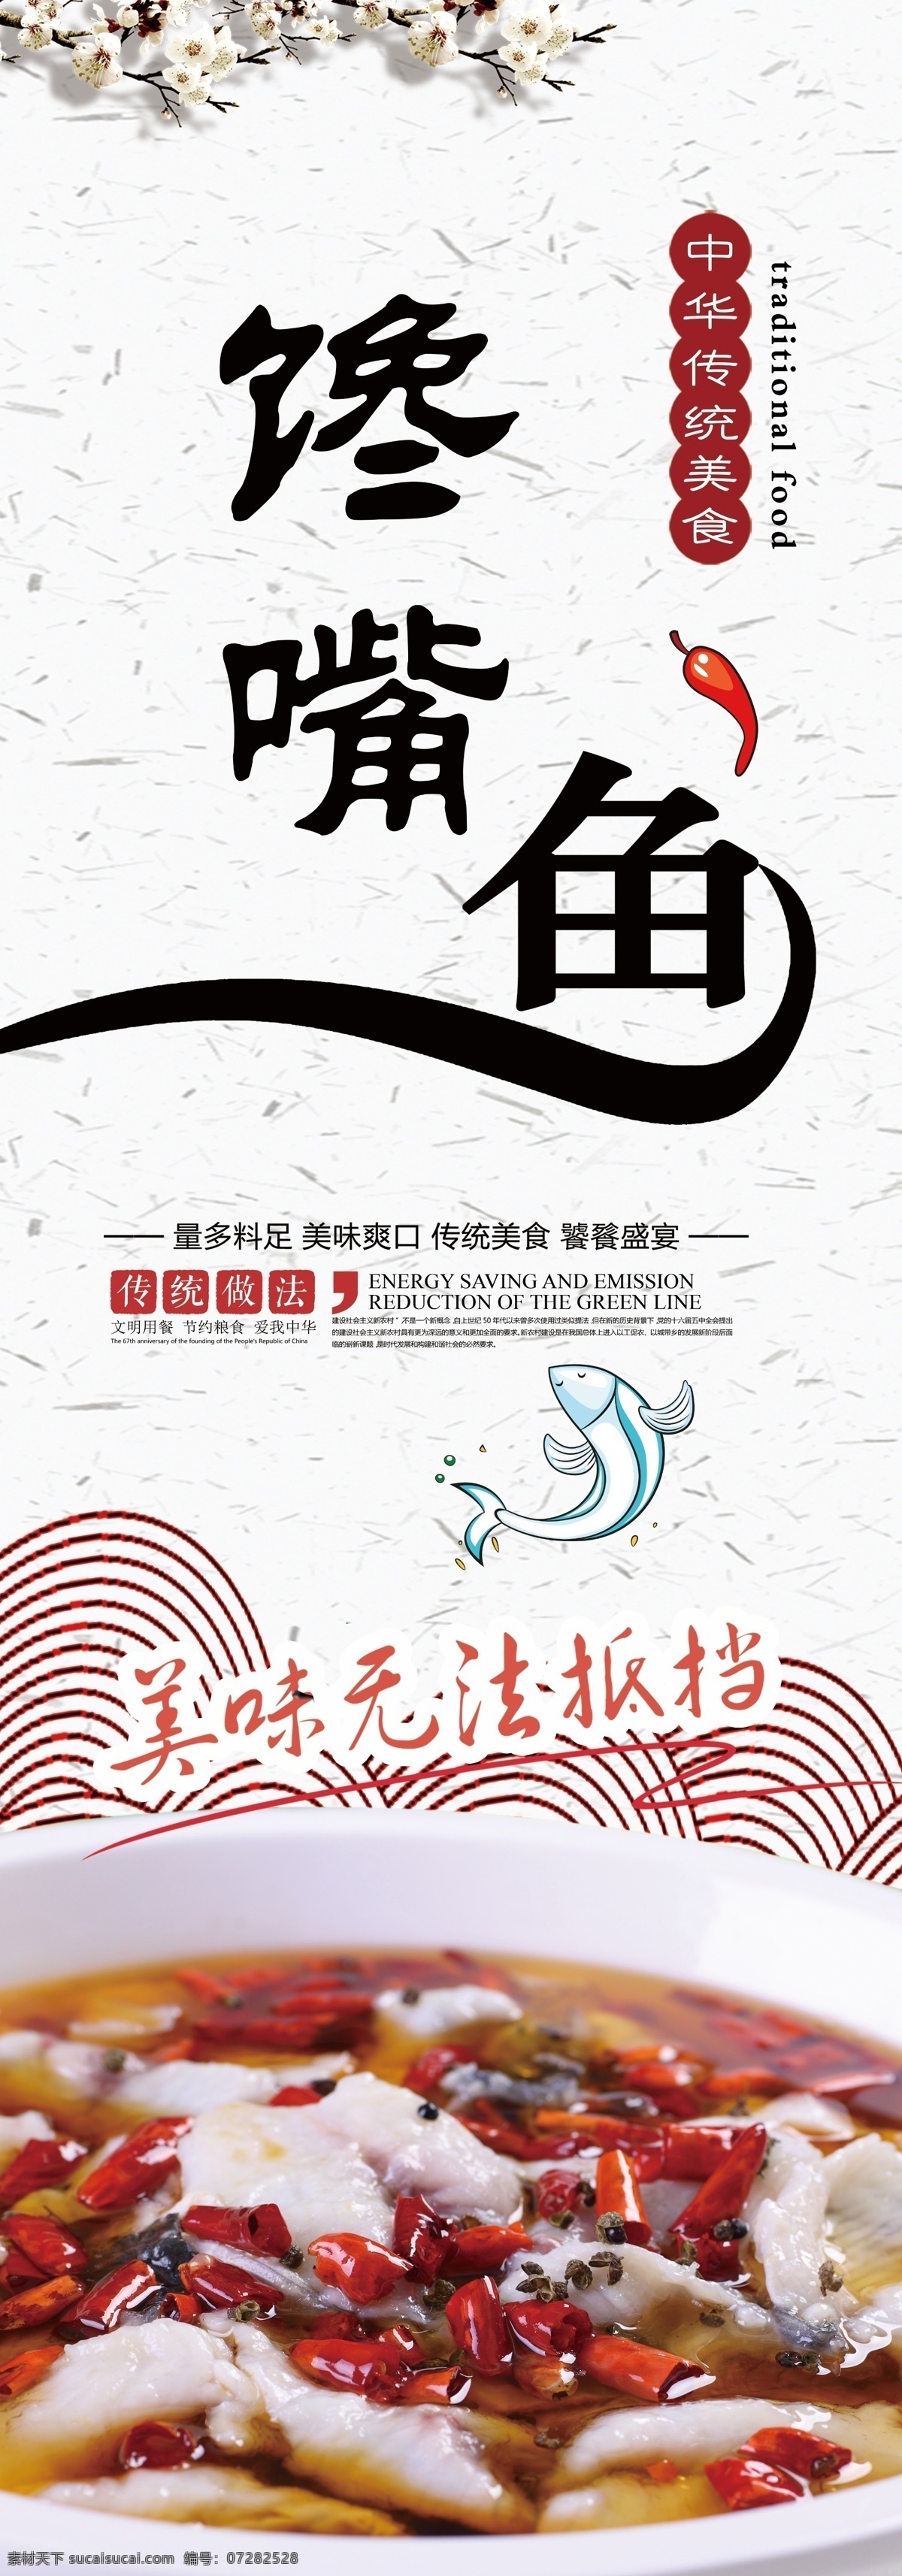 酸菜鱼 灯片 中国风 菜单封面 舌尖上的中国 招贴设计